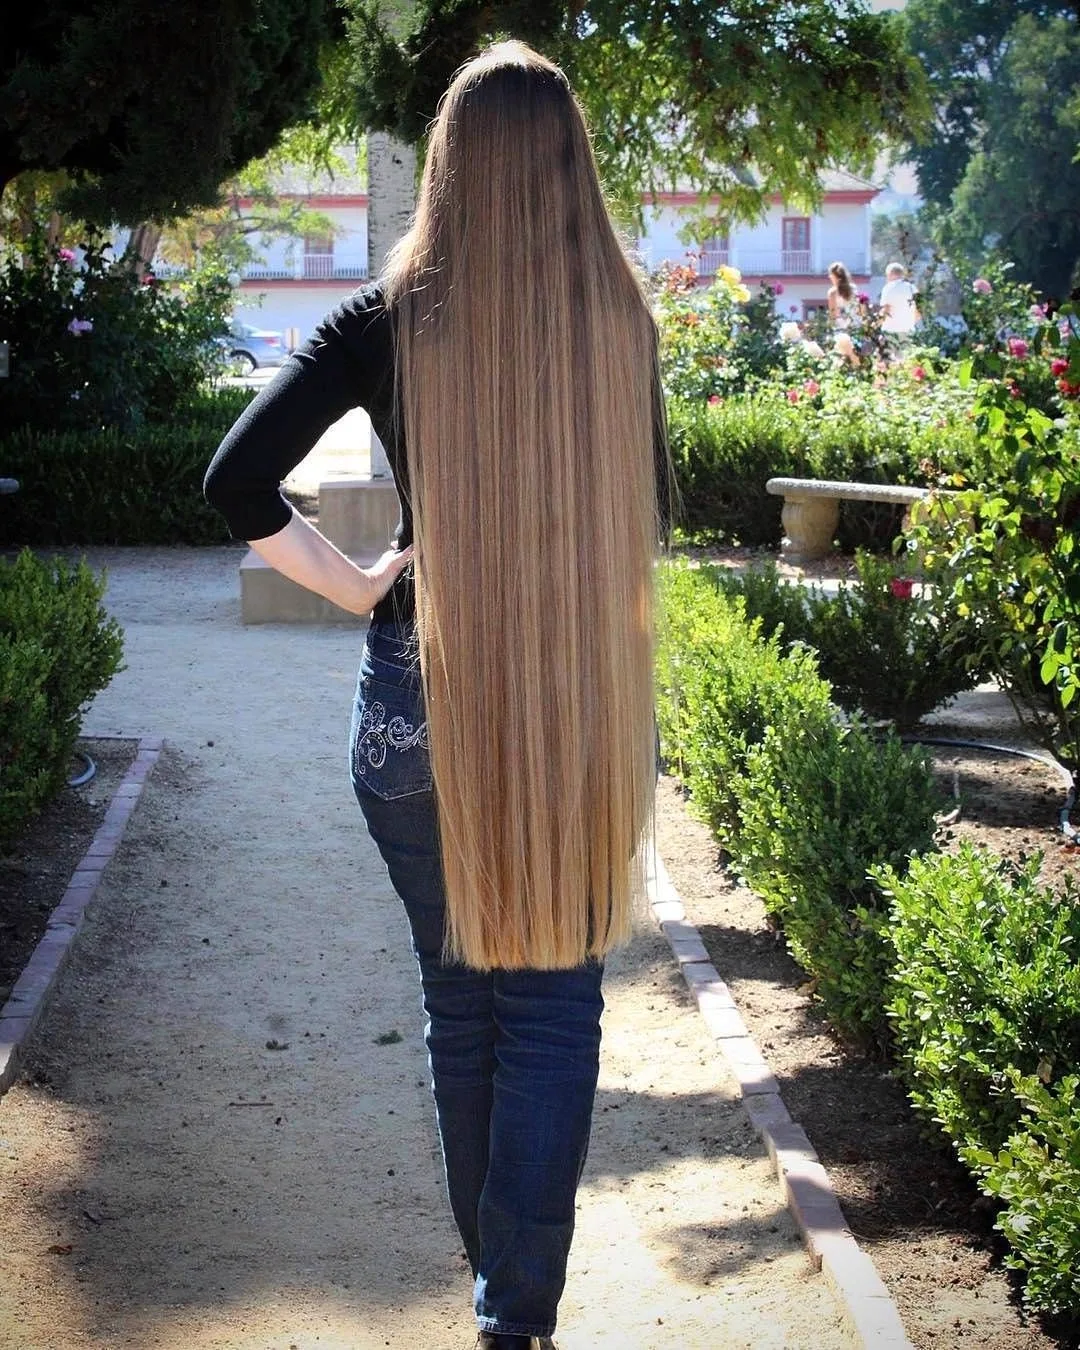 Отрастить длинные волосы